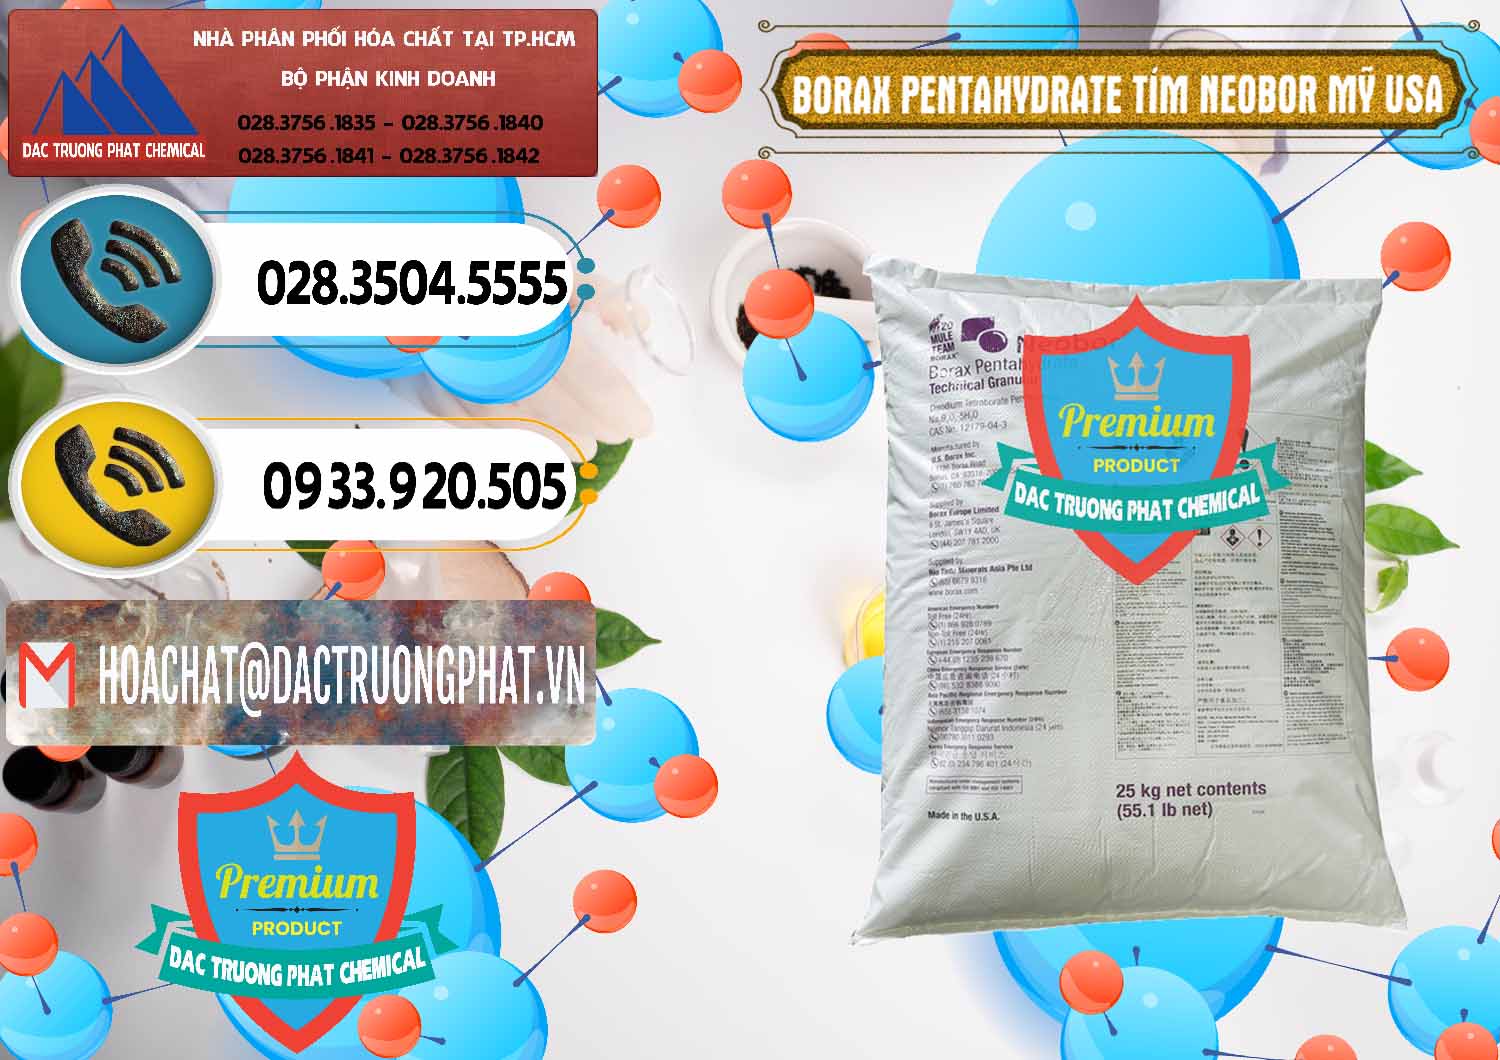 Công ty bán ( cung cấp ) Borax Pentahydrate Bao Tím Neobor TG Mỹ Usa - 0277 - Nơi chuyên phân phối - kinh doanh hóa chất tại TP.HCM - hoachatdetnhuom.vn